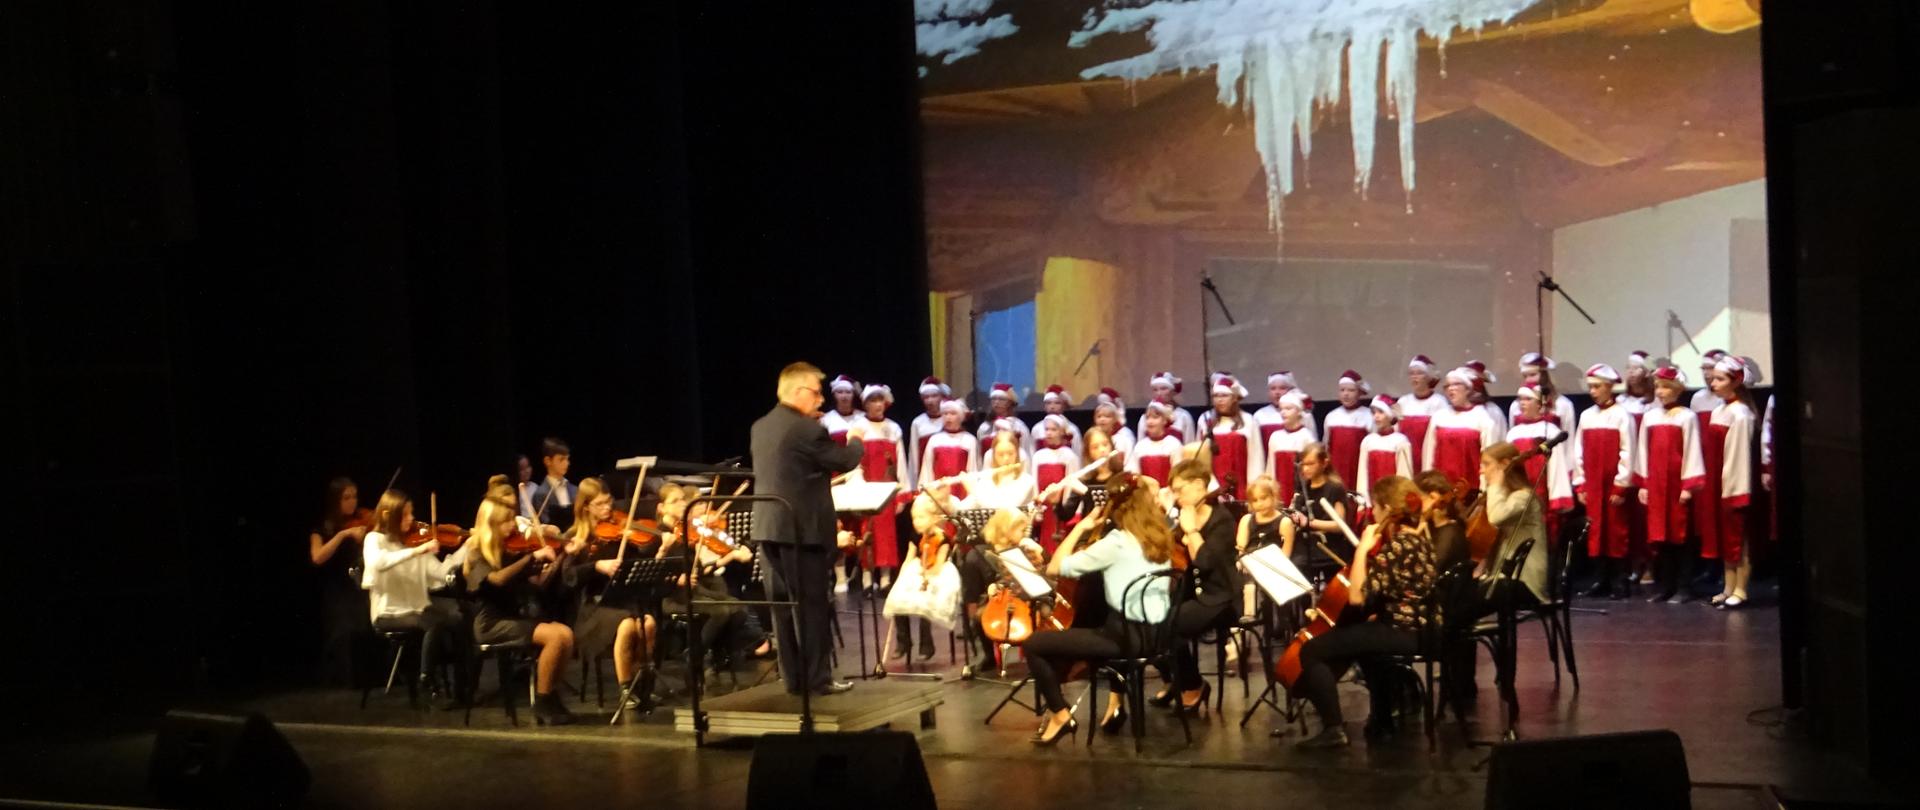 Zdjęcie przedstawia występ chóru w strojach biało-czerwonych i orkiestry na tle scenerii zimowej